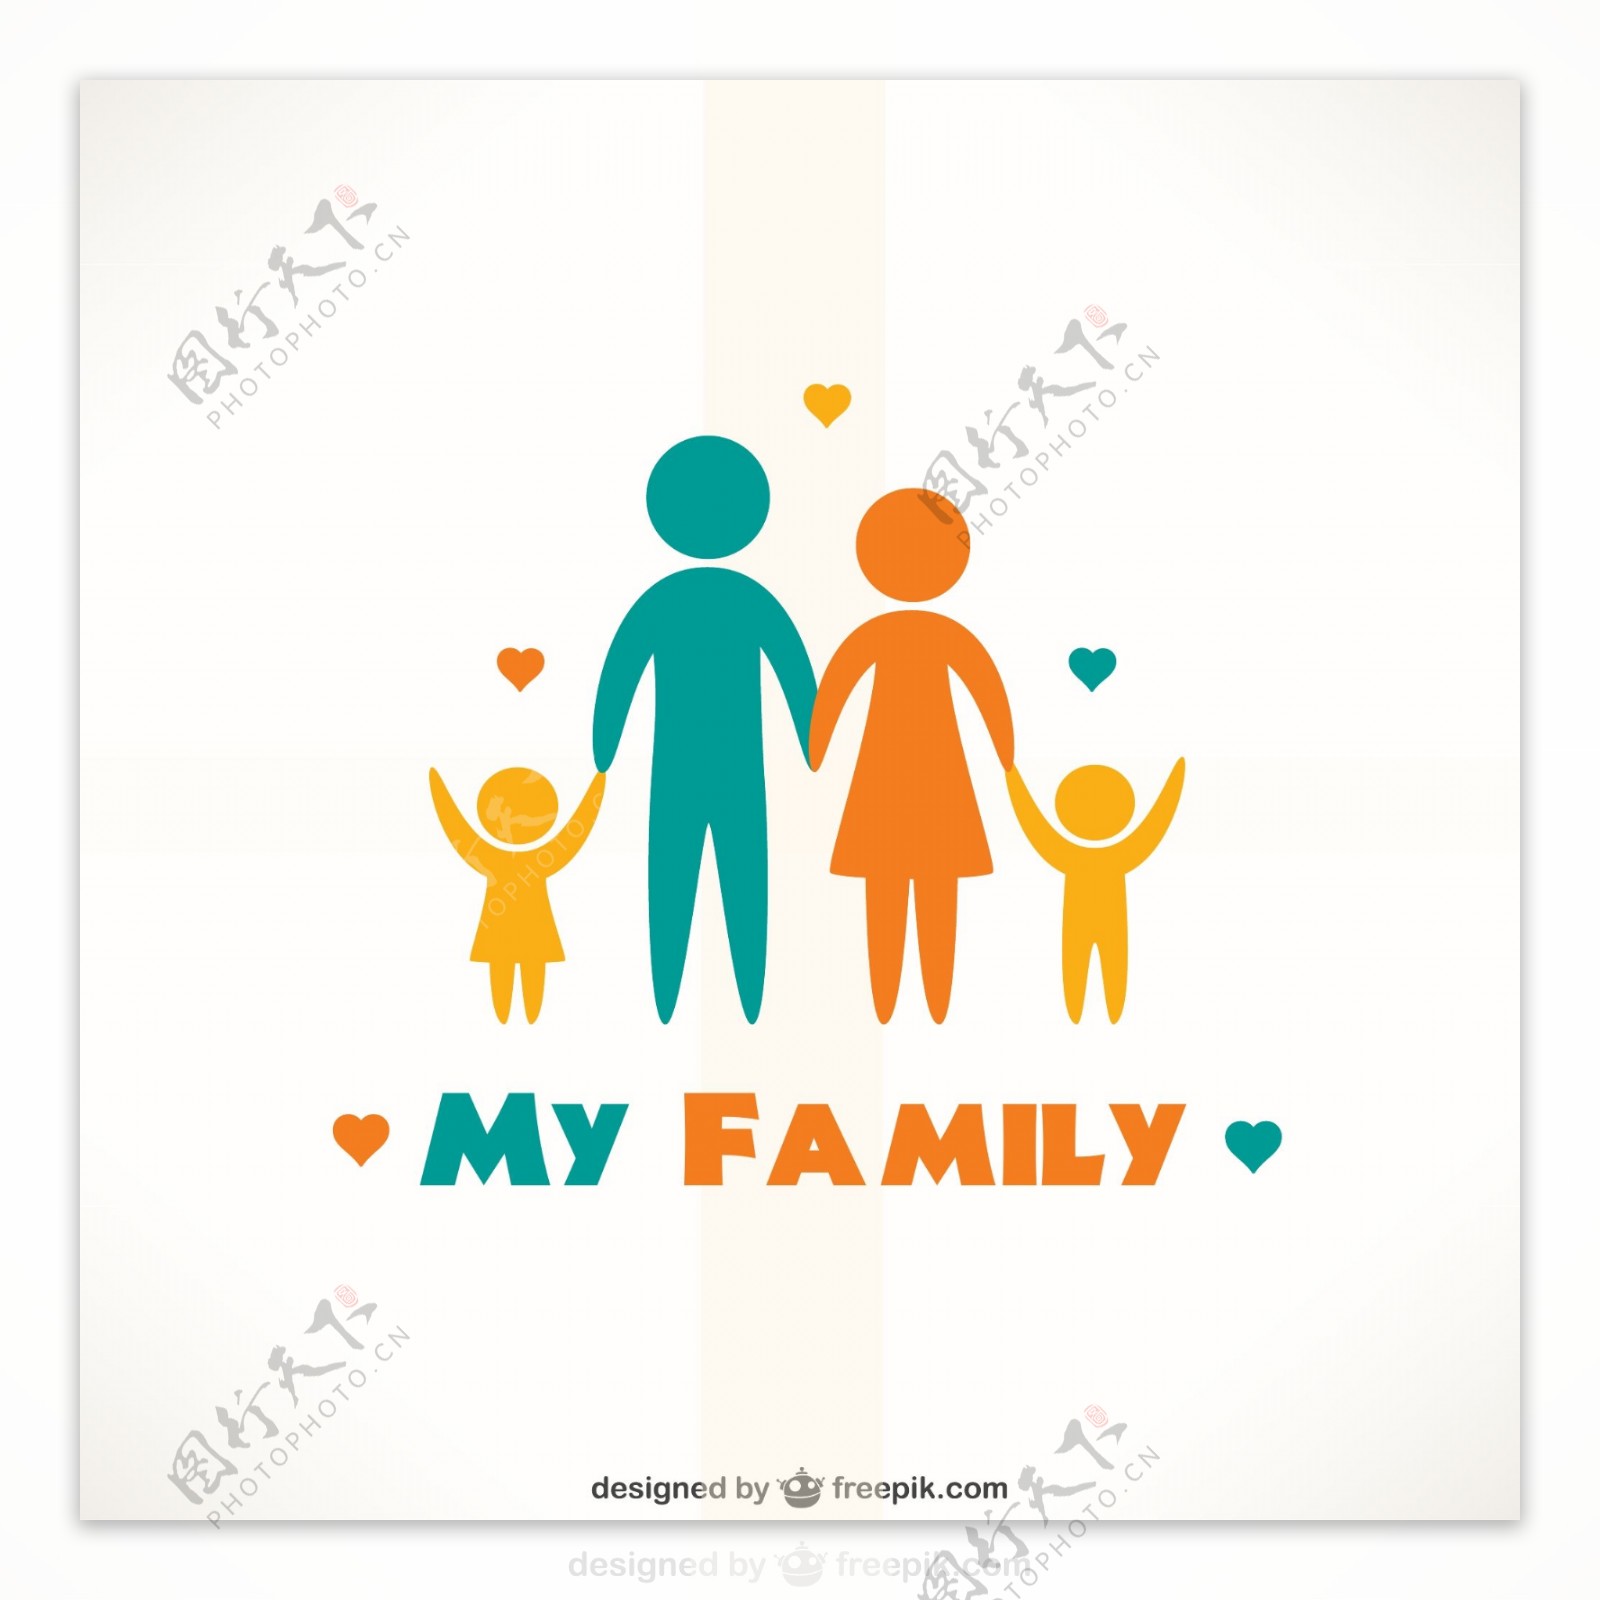 彩色我的家人物标志矢量素材图片